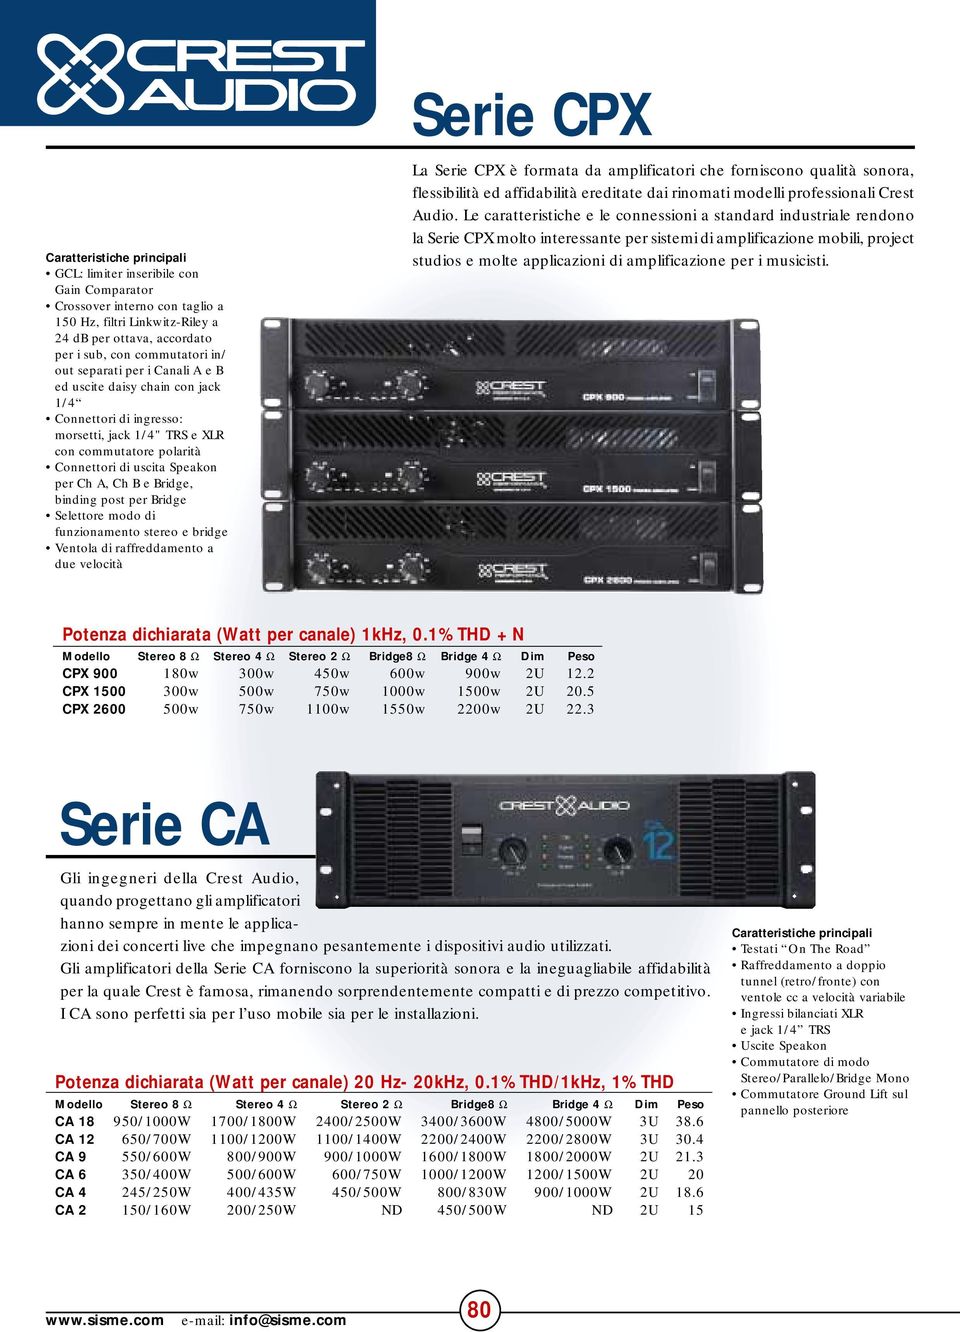 Bridge Selettore modo di funzionamento stereo e bridge Ventola di raffreddamento a due velocità La Serie CPX è formata da amplificatori che forniscono qualità sonora, flessibilità ed affidabilità